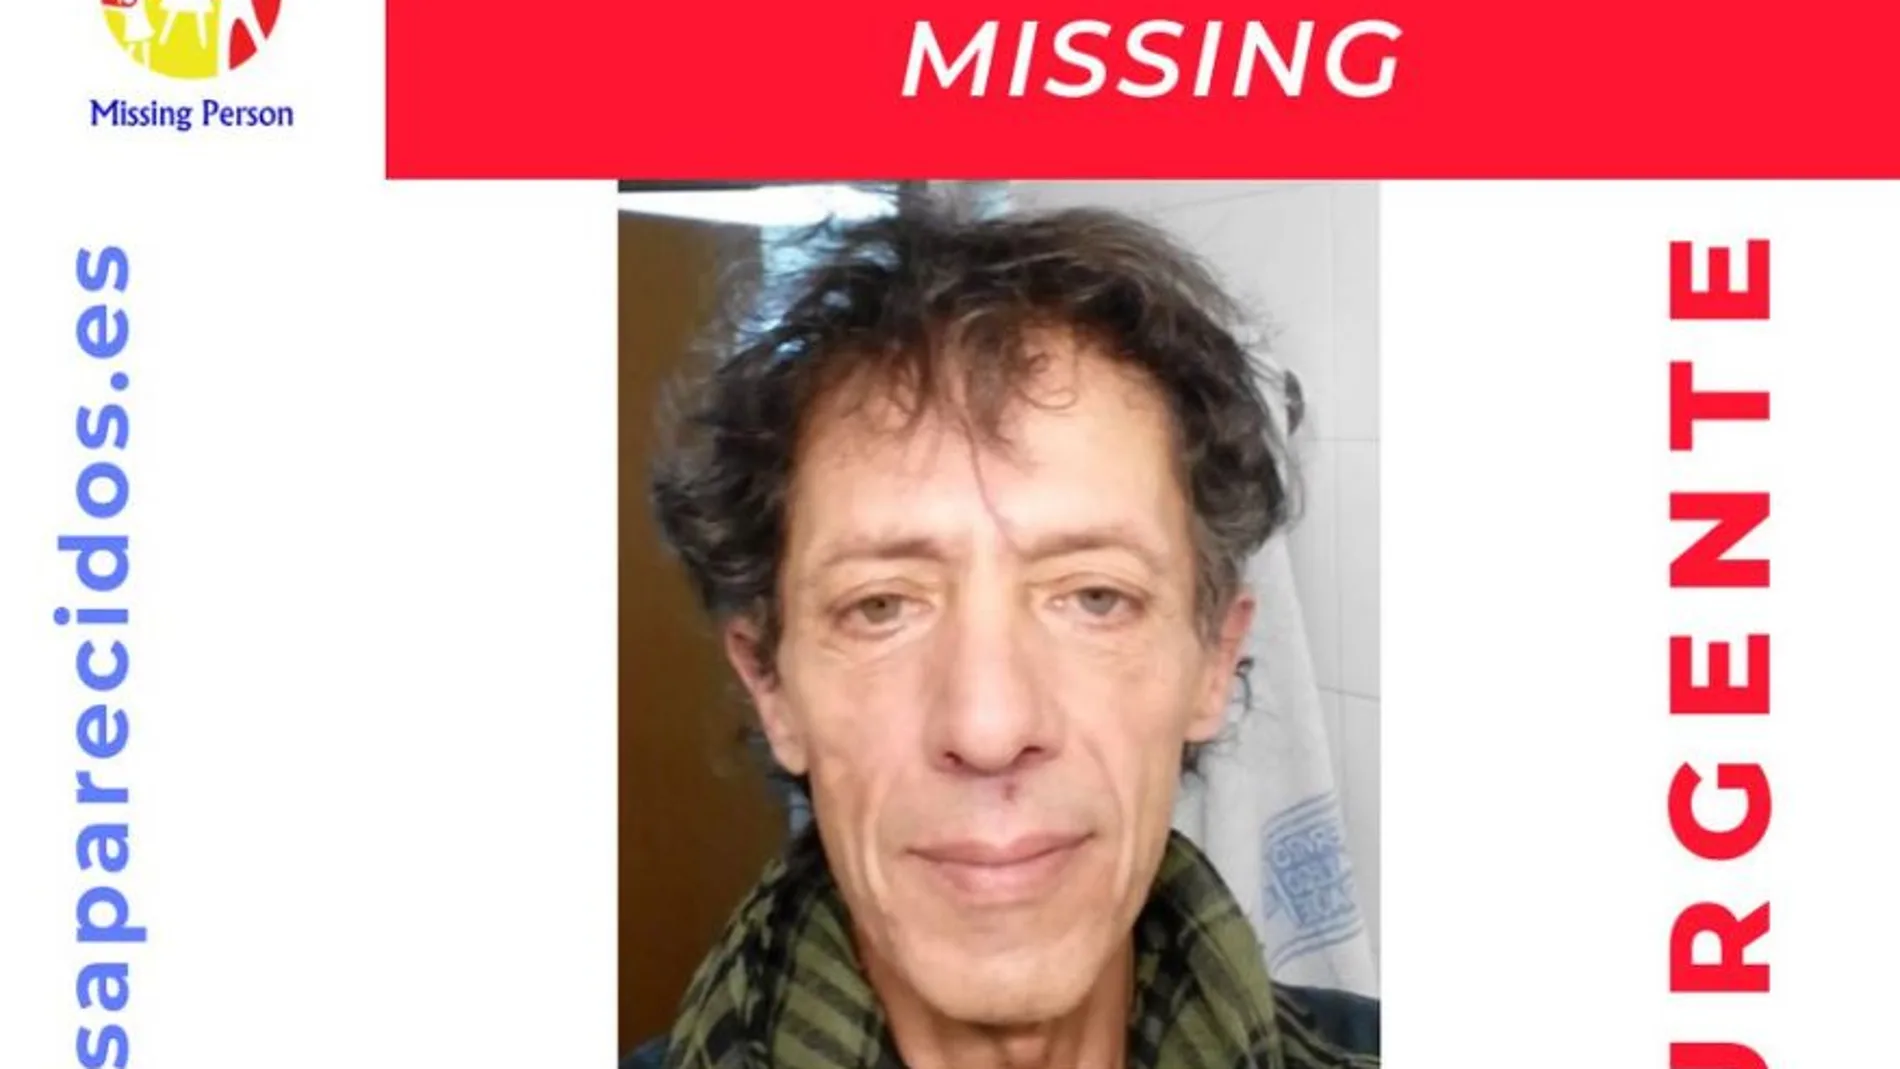 Buscan a un hombre desaparecido en Santiago de Compostela el 27 de septiembre